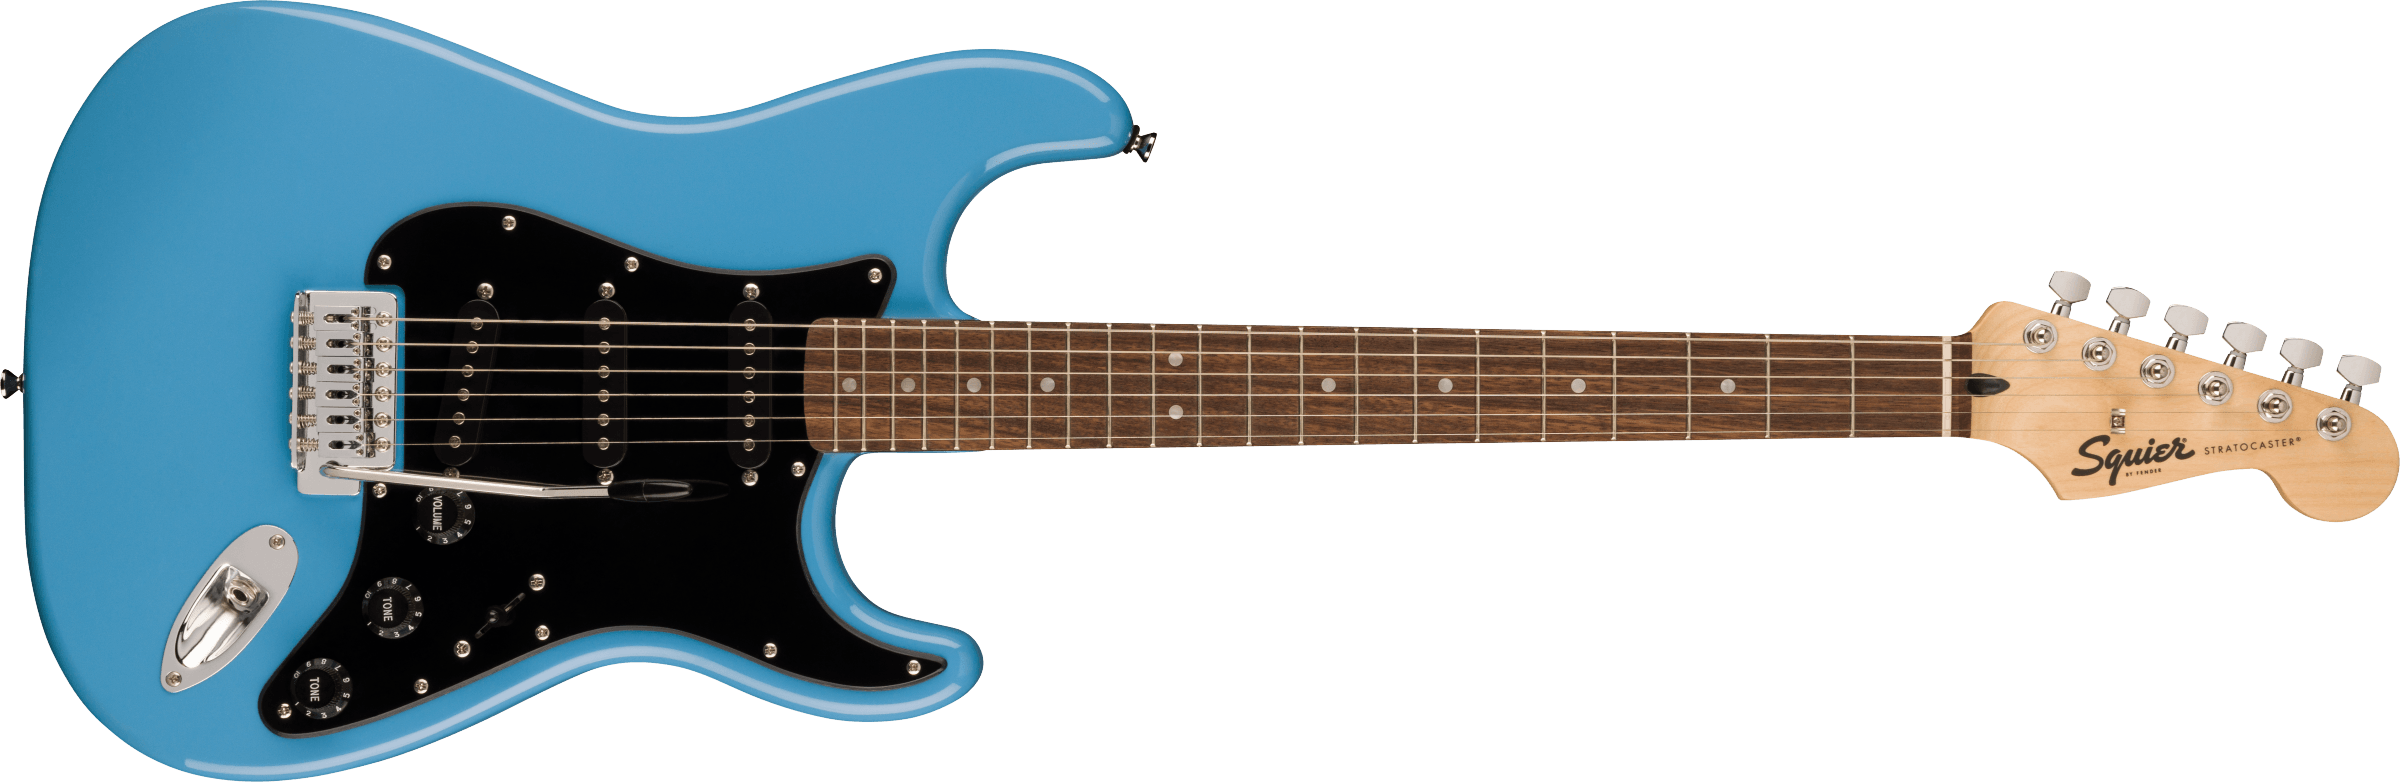 Billede af Fender Squier Sonic Stratocaster El-guitar (California Blue)